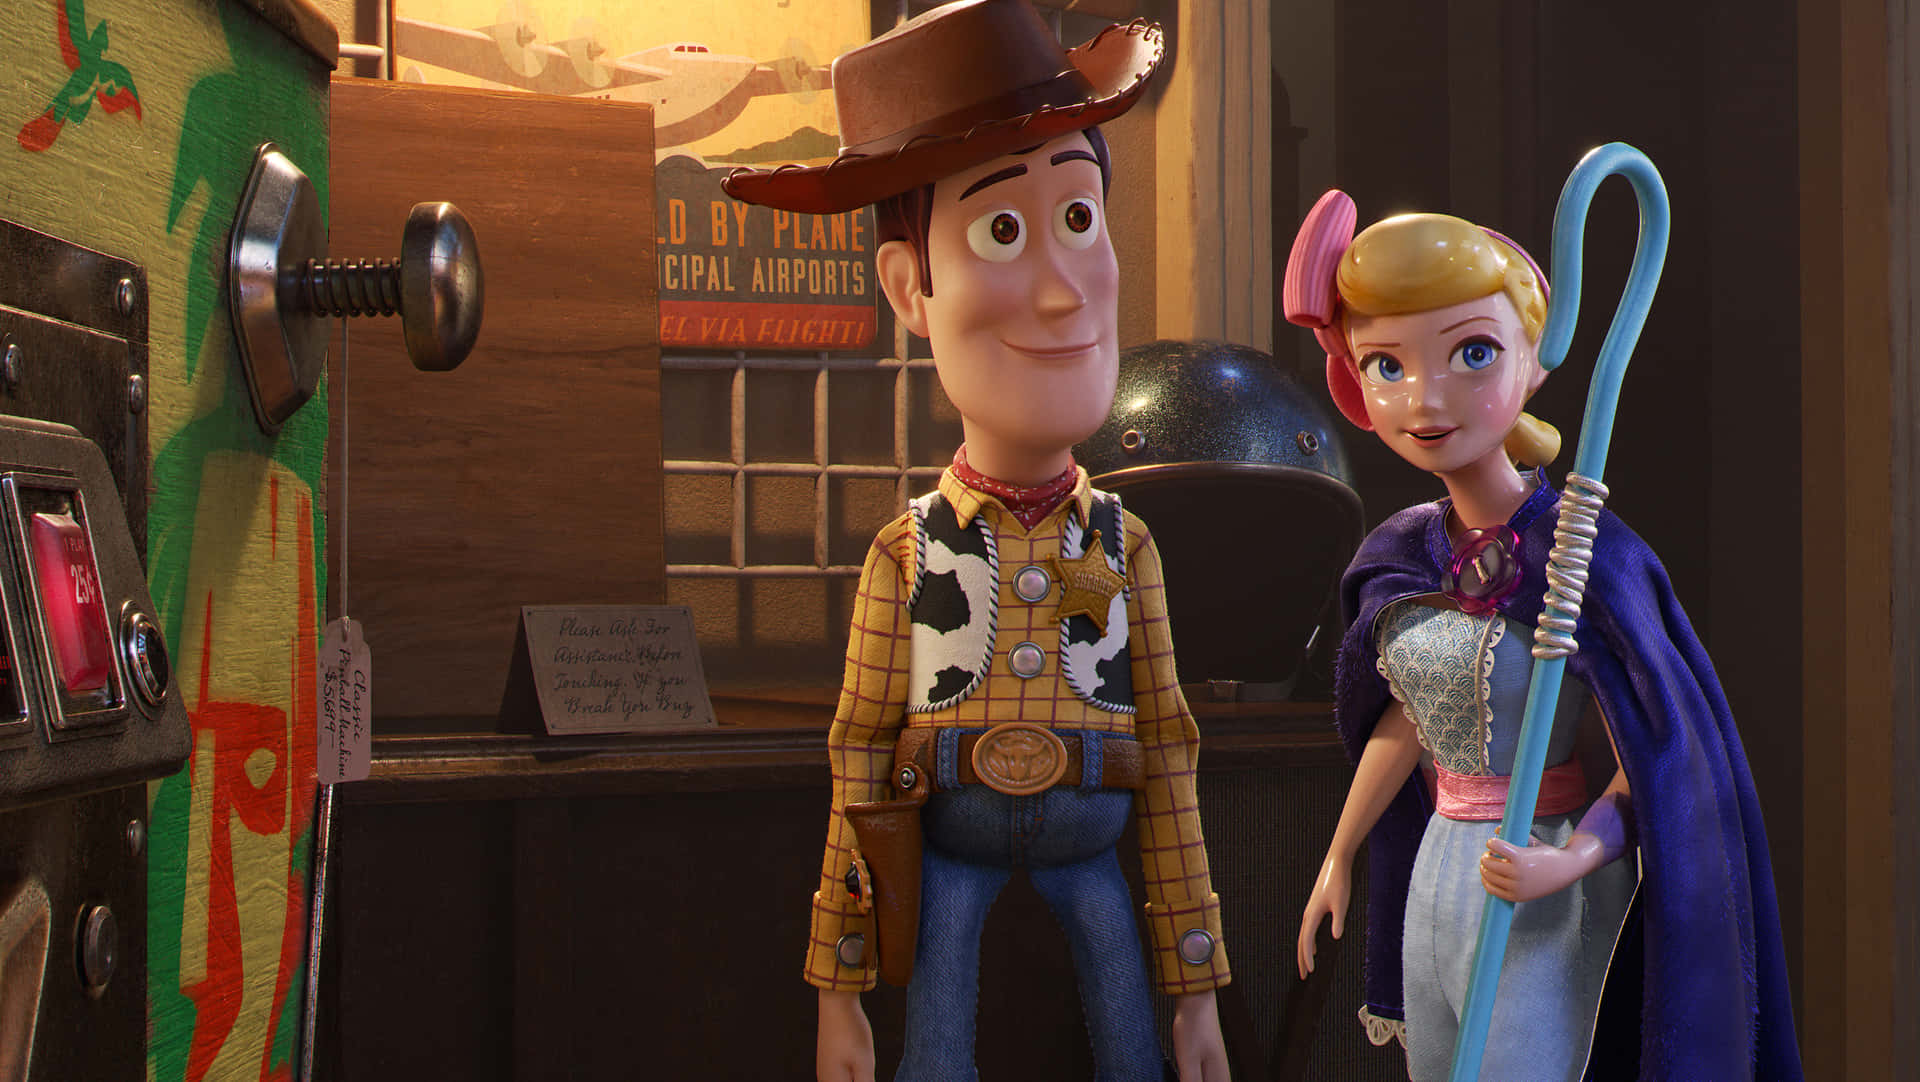 Begleitewoody Und Seine Freunde Auf Ihrer Abenteuerlichen Reise In Toy Story 4.